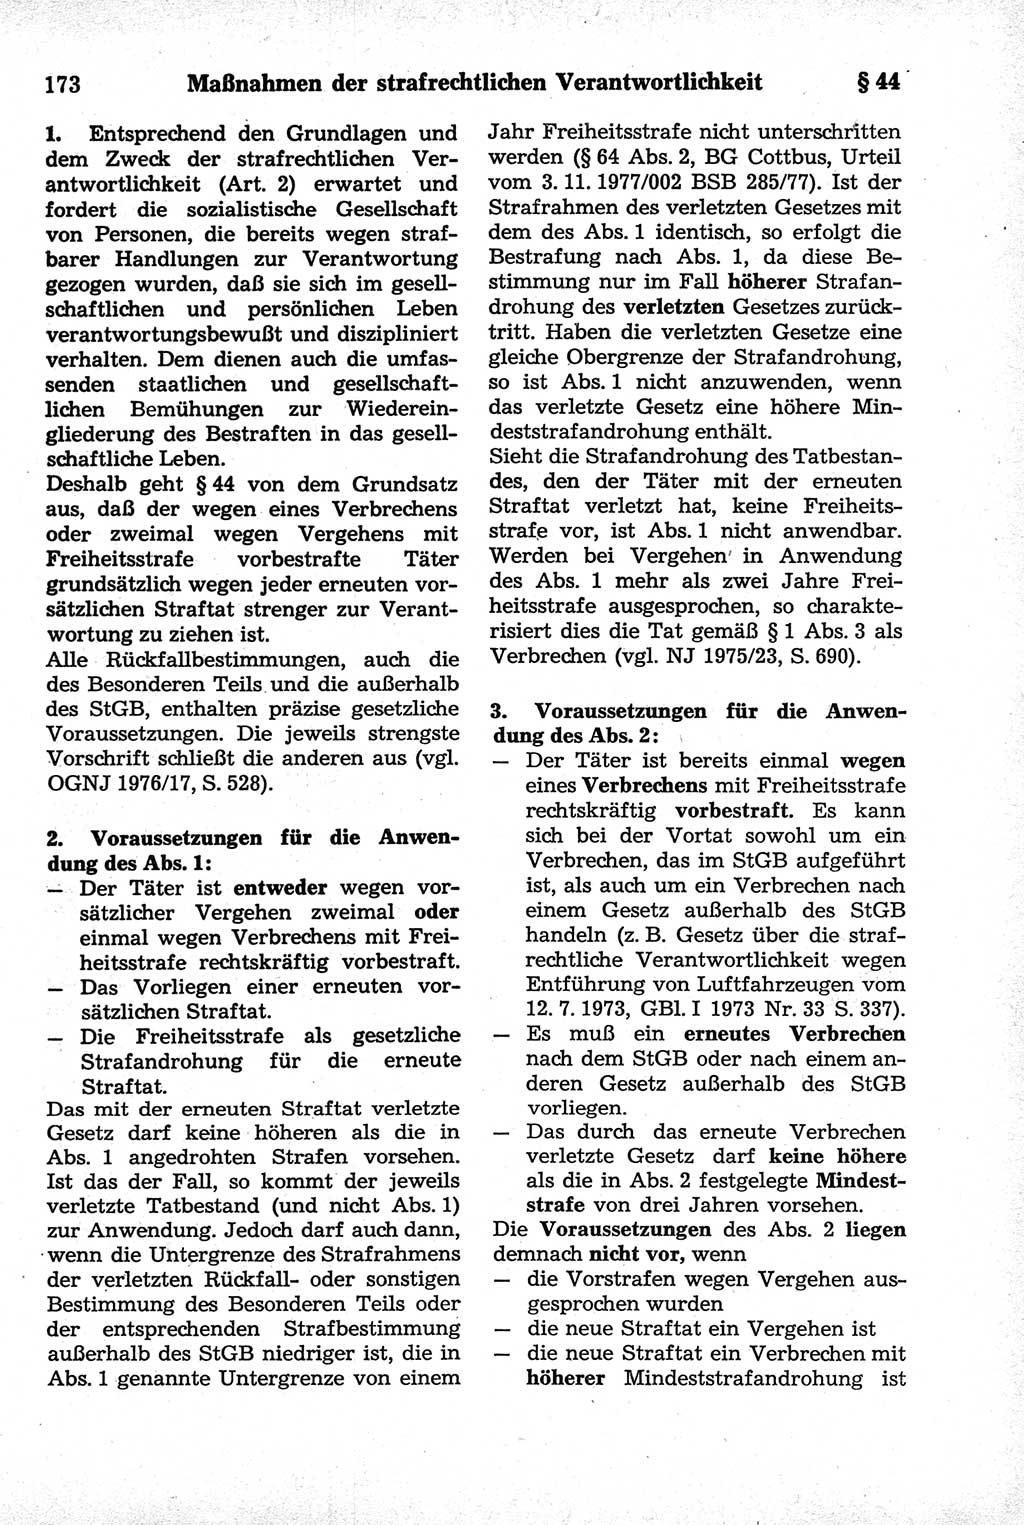 Strafrecht der Deutschen Demokratischen Republik (DDR), Kommentar zum Strafgesetzbuch (StGB) 1981, Seite 173 (Strafr. DDR Komm. StGB 1981, S. 173)